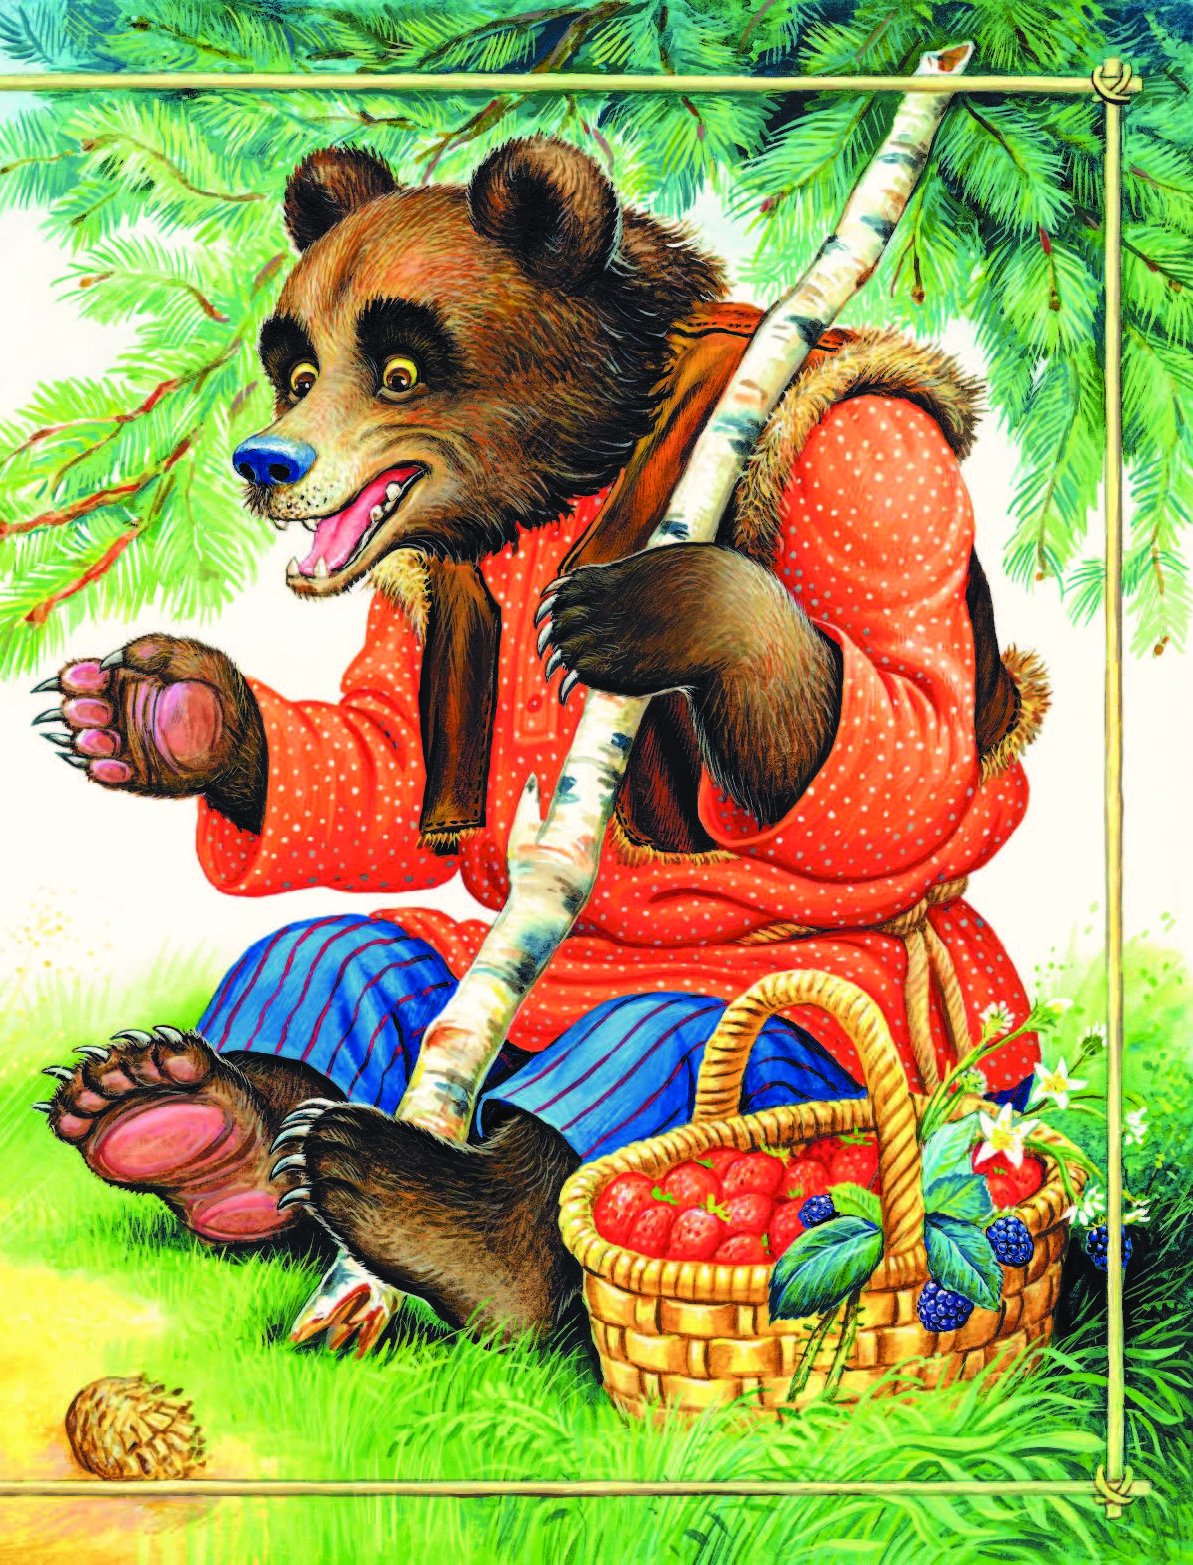 Мишка герой произведения. Медведь из сказки. Иллюстрации к сказкам. Медведь сказочный. Иллюстрации к русским народным сказкам.